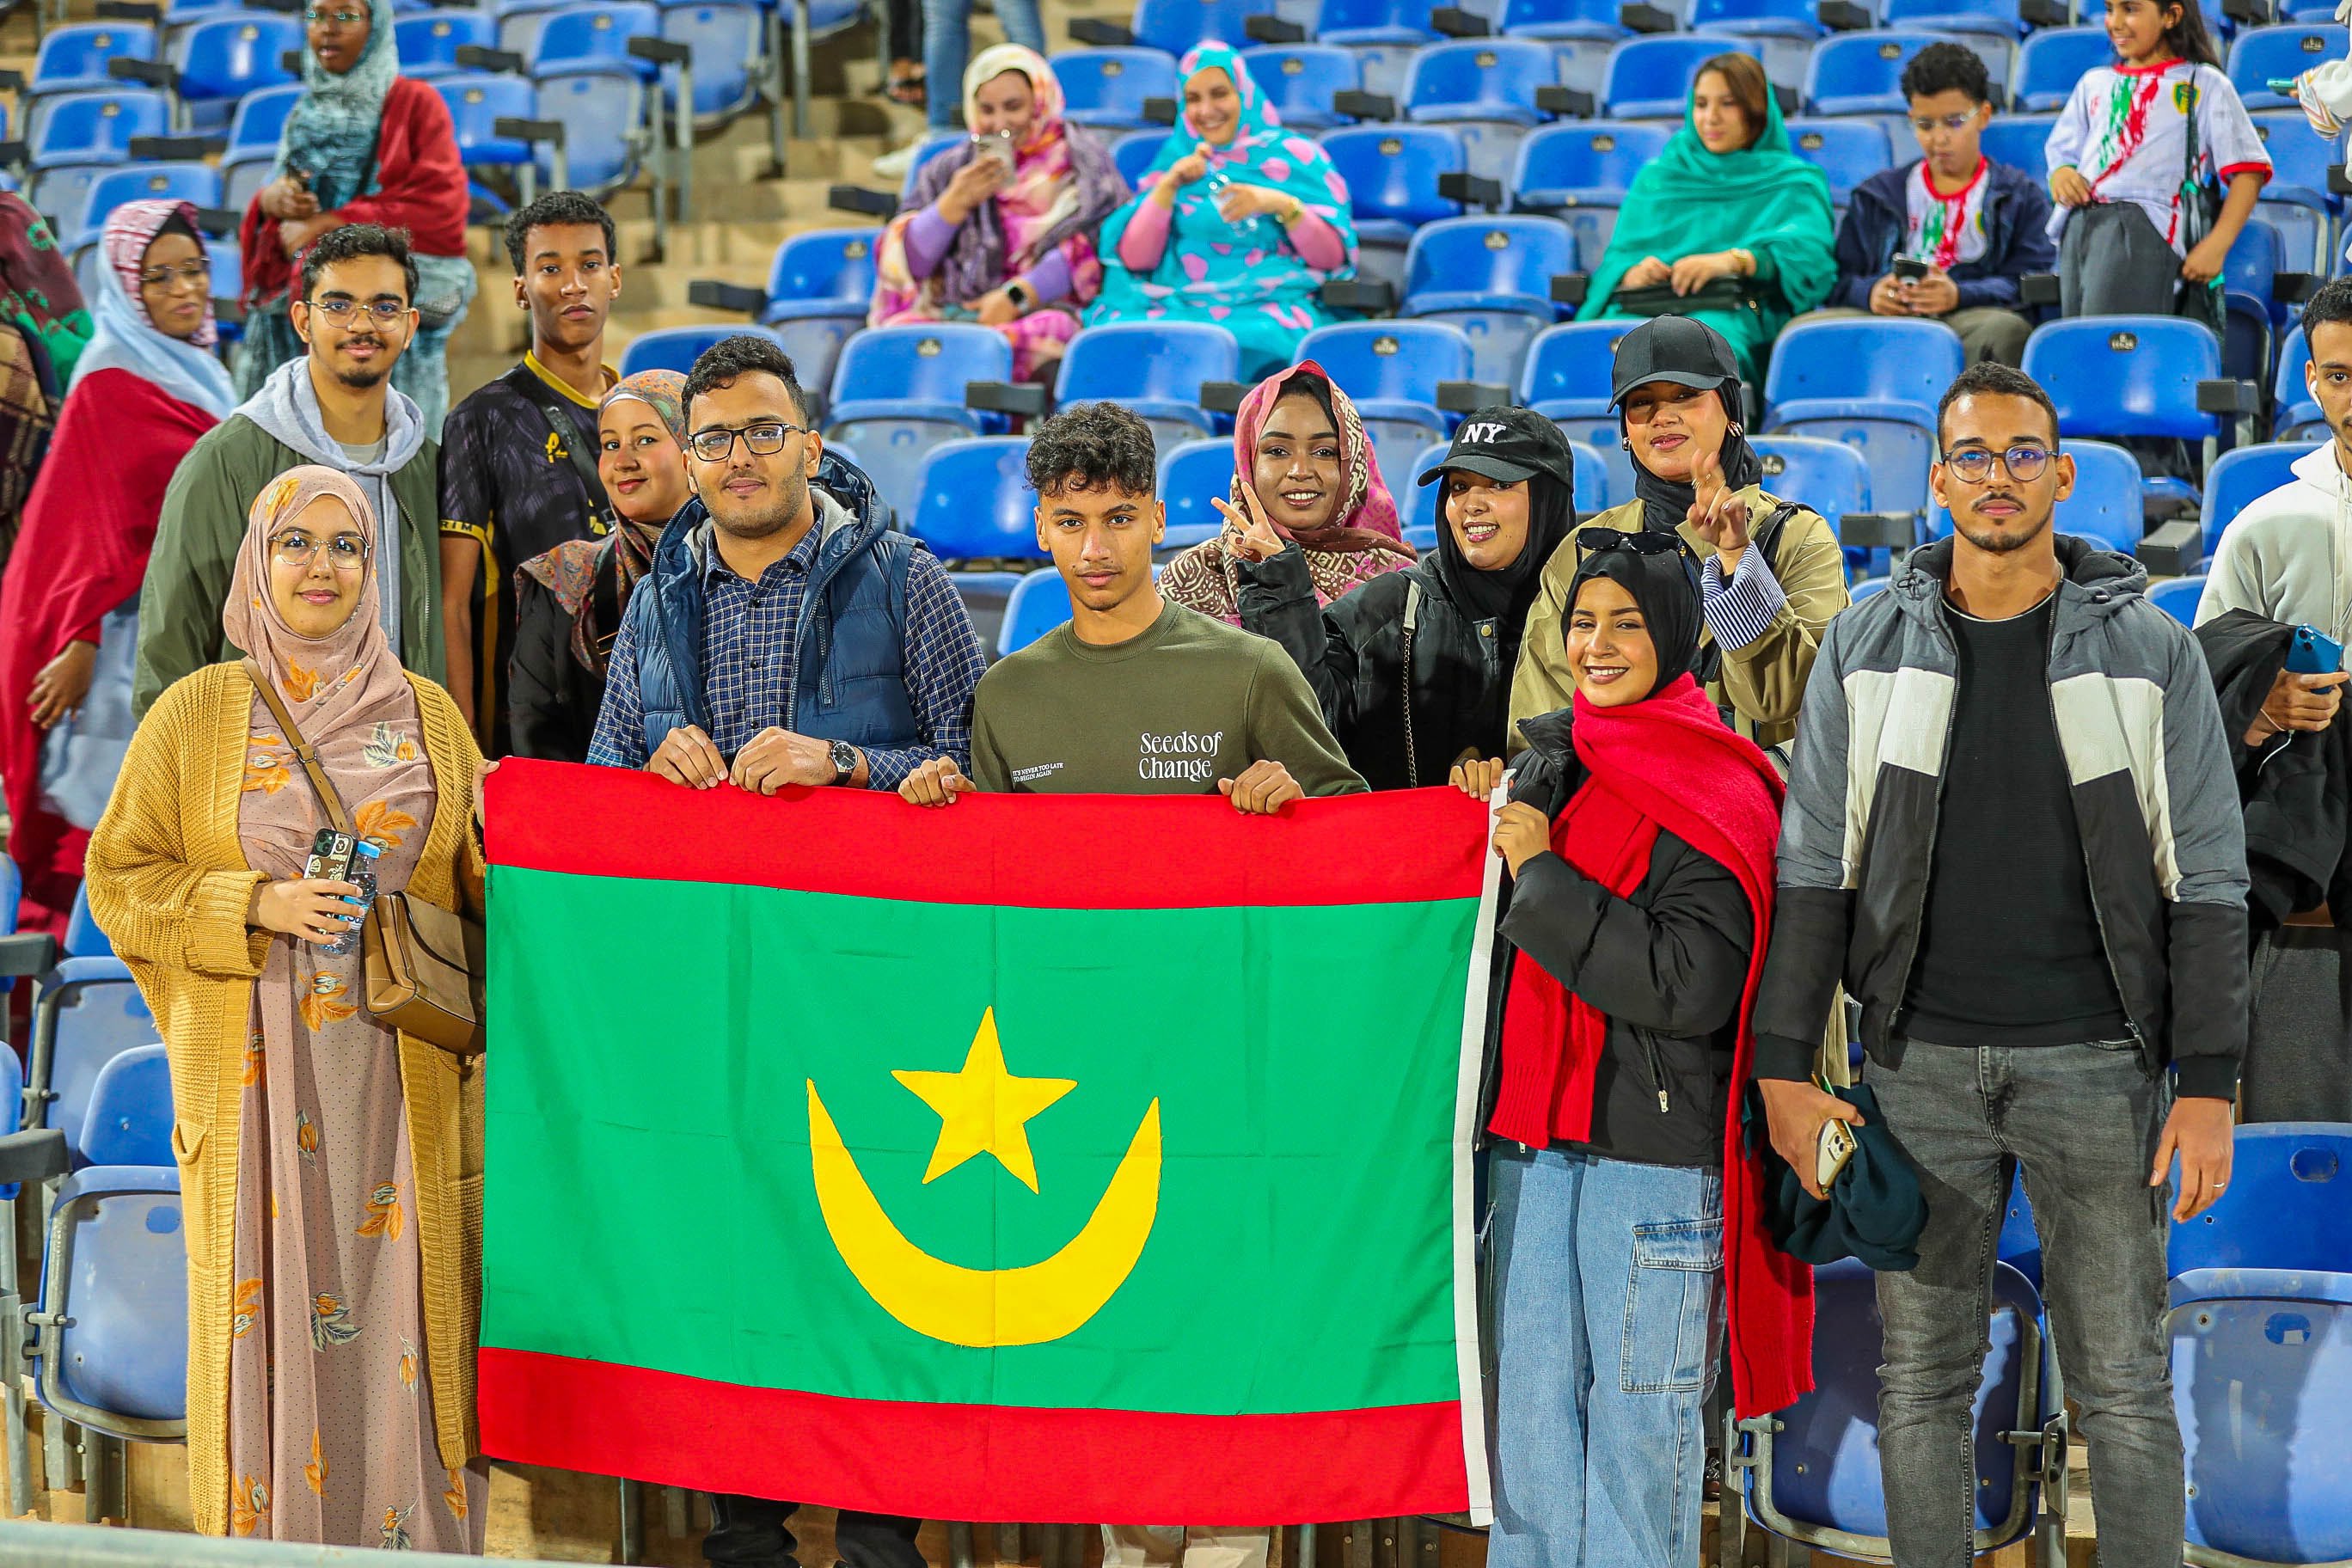 Des supporters mauritaniens presents au grand stade de Marrakech pour soutenir leur équipe nationale